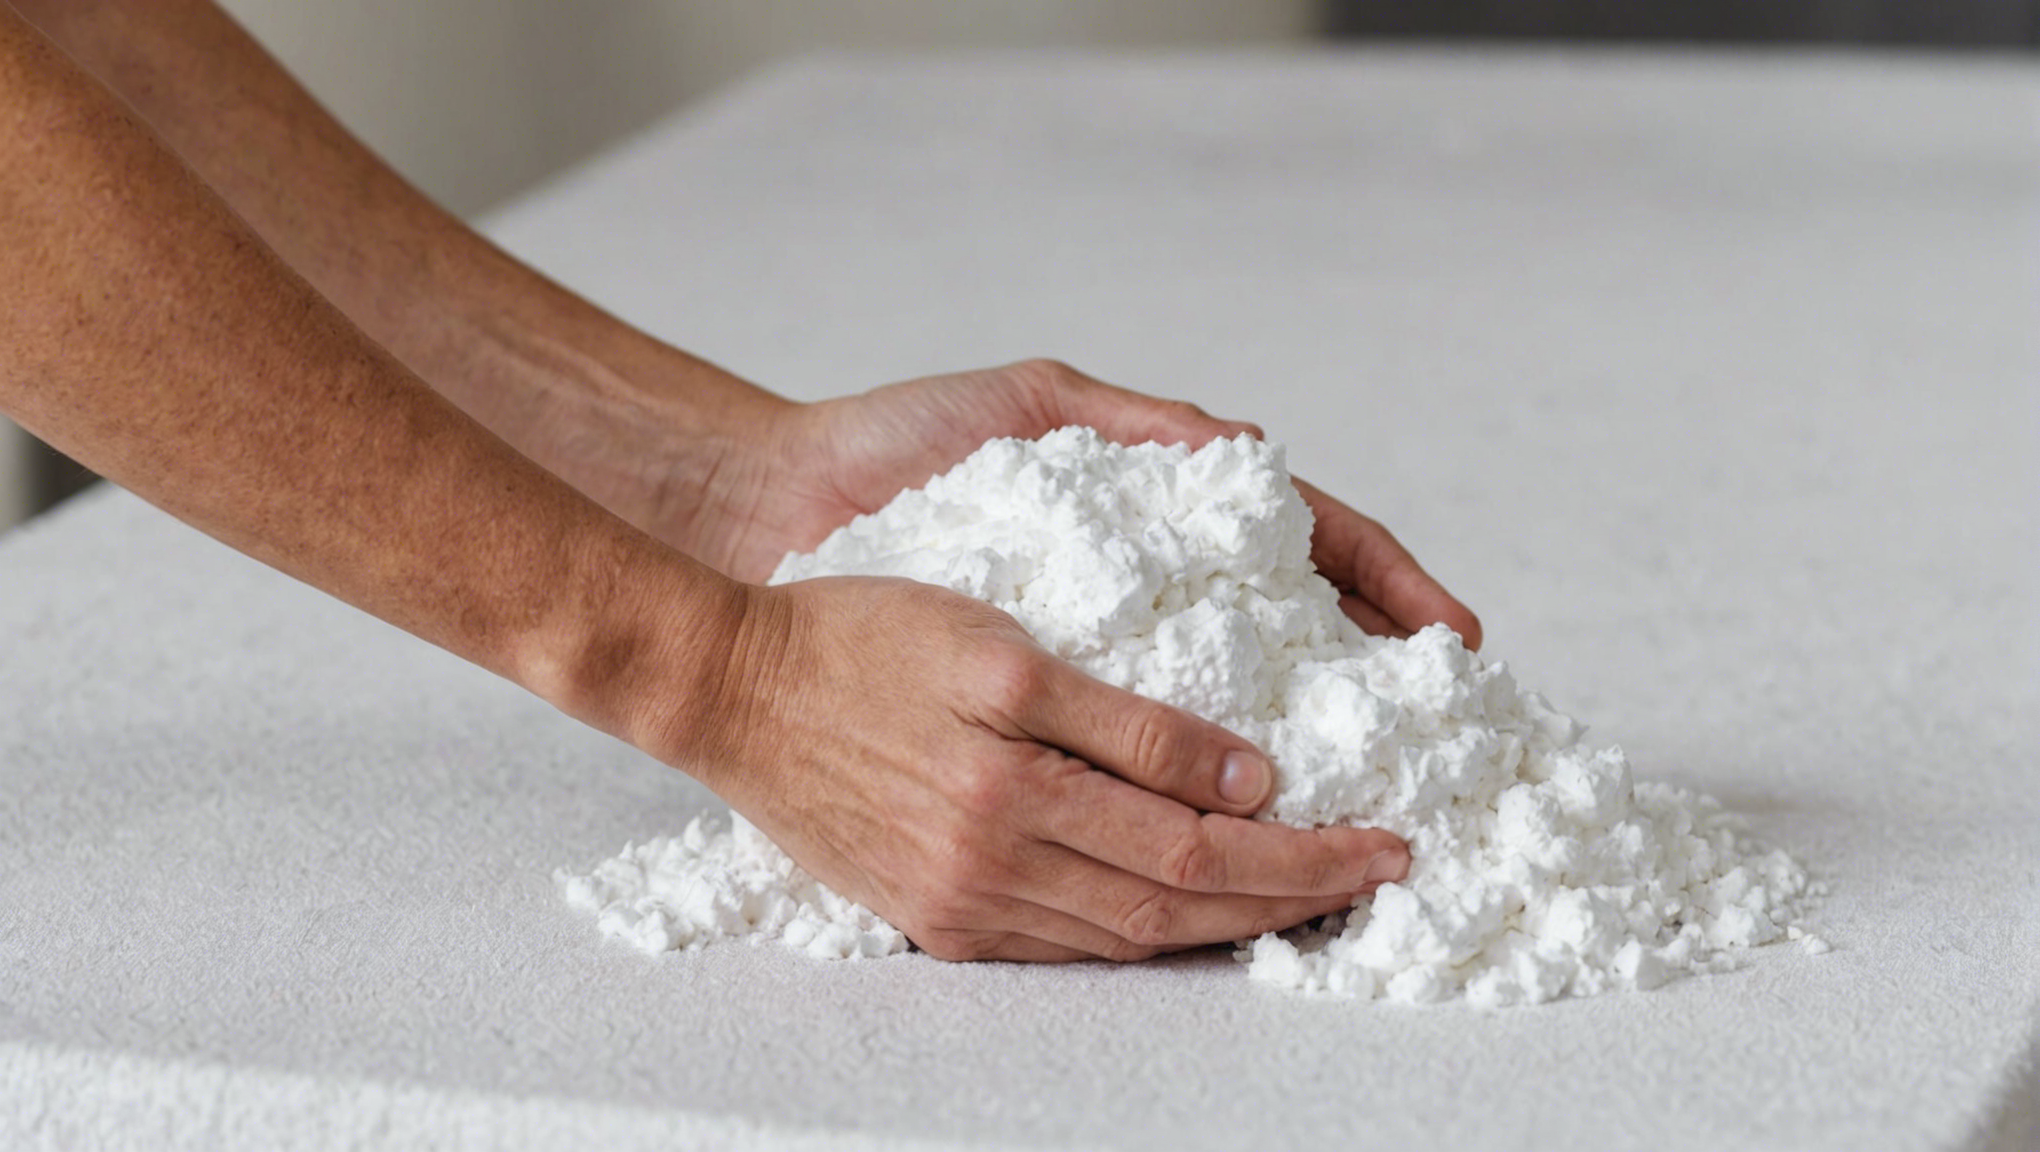 découvrez dans ce guide pratique comment utiliser le bicarbonate de soude de manière efficace pour blanchir votre linge et obtenir un résultat éclatant.